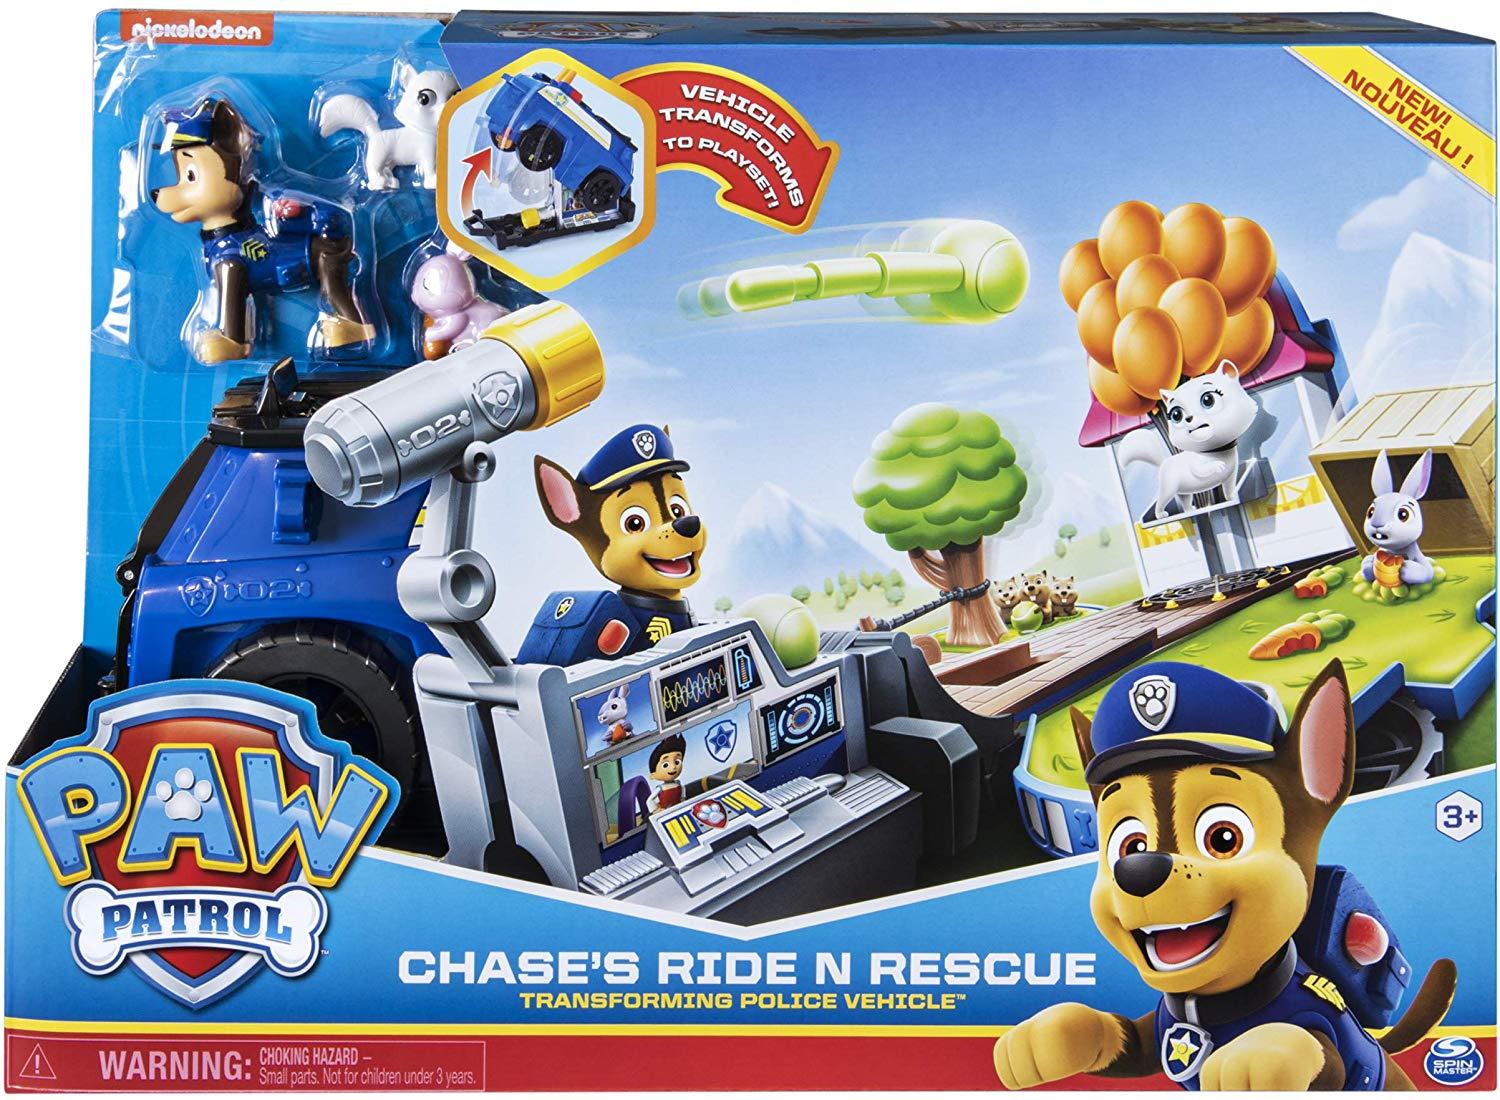 מפרץ ההרפתקאות צייס רכב נהפך לתחנת משטרה-zrizi toys